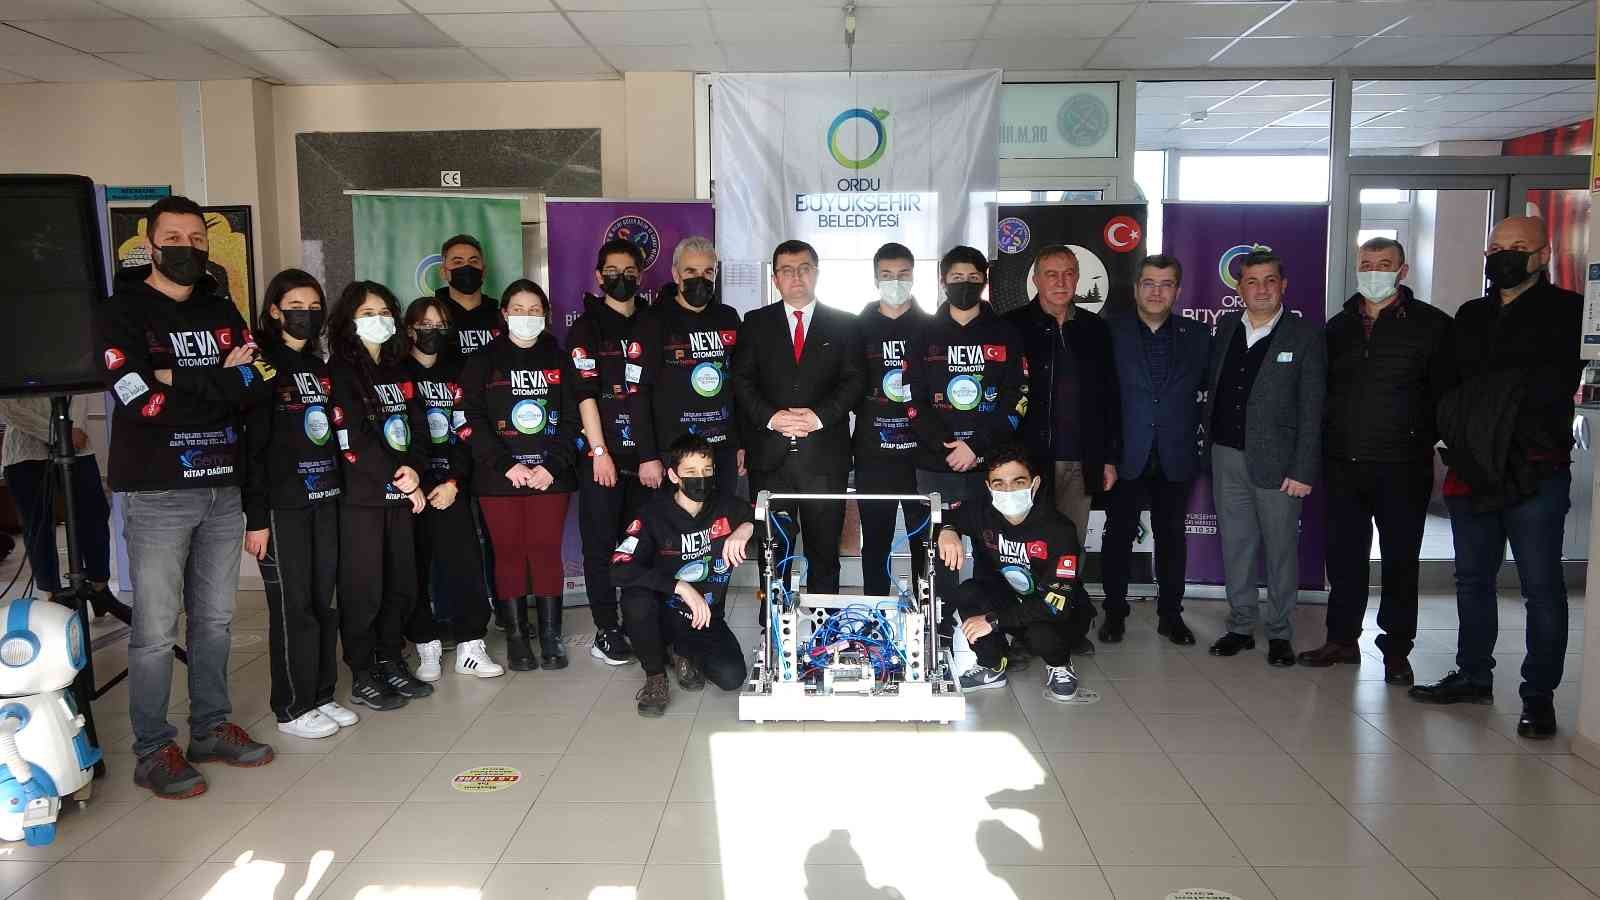 Ordulu öğrenciler, Kanada’daki robotik yarışmada Türkiye’yi temsil edecek #ordu